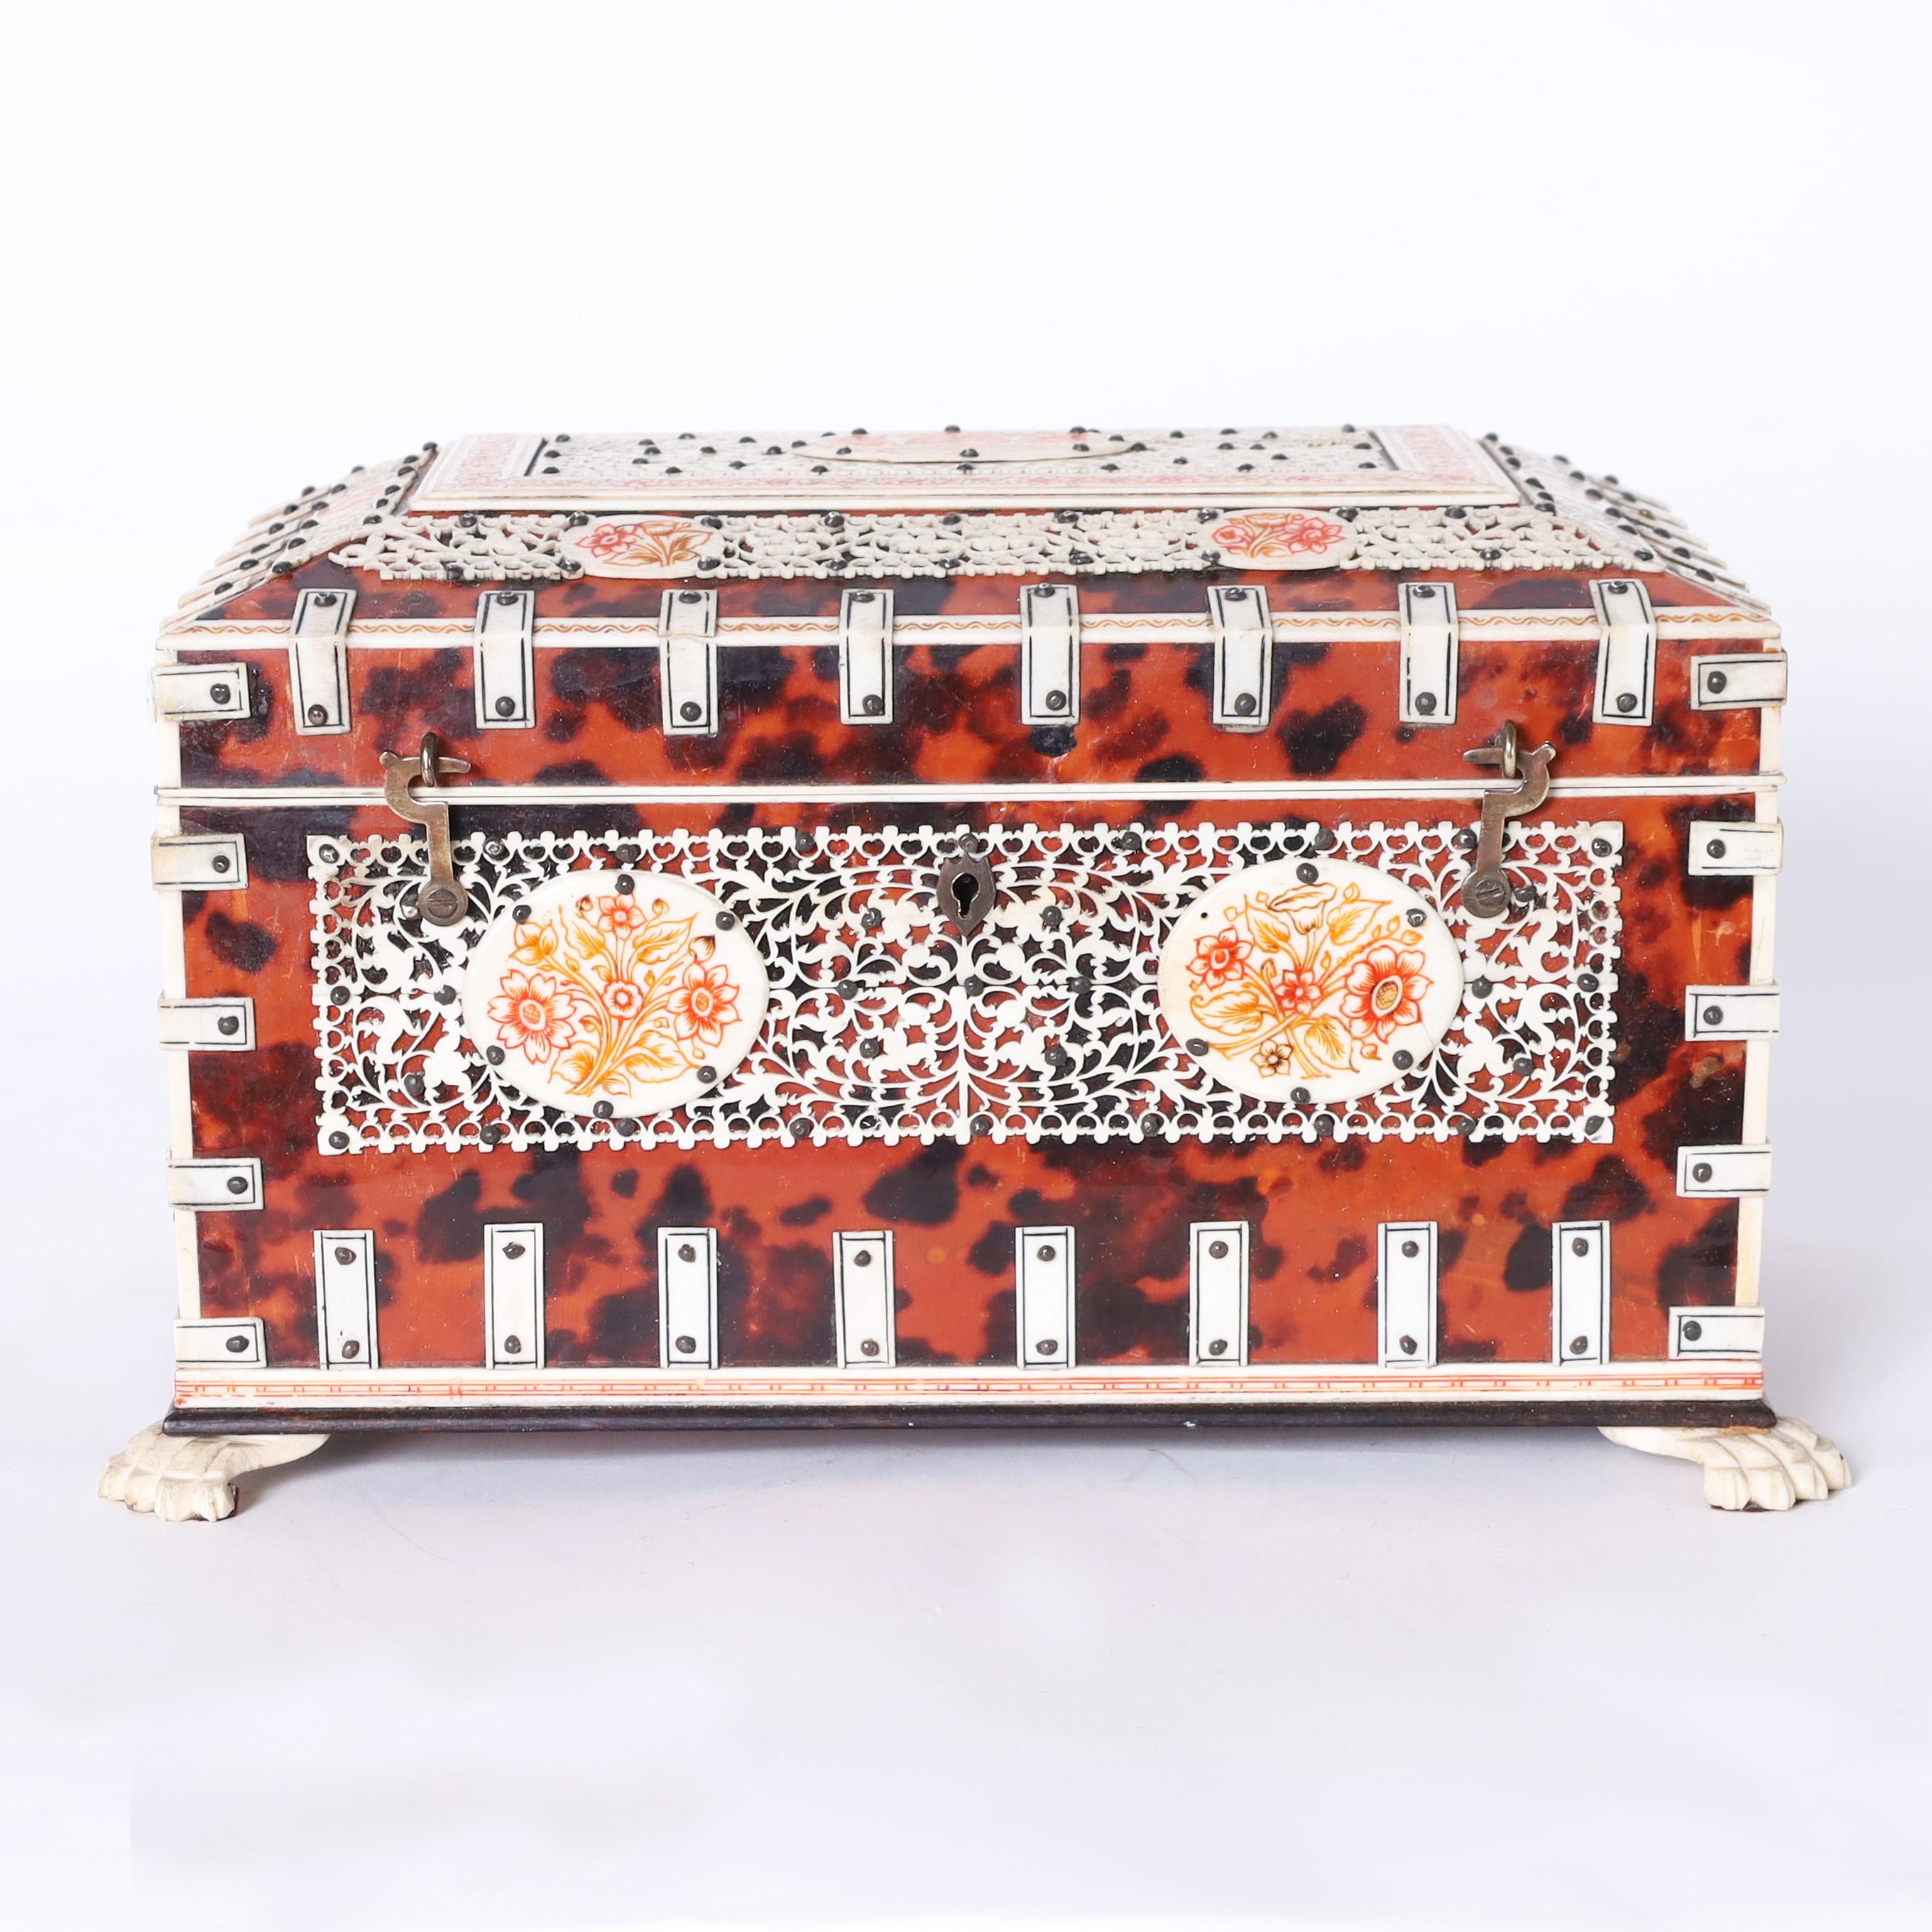 Impressionnante boîte anglo-indienne fabriquée en acajou et recouverte d'écaille de tortue, décorée de lanières en os, de panneaux floraux sculptés et peints, et de pieds en forme de pattes. L'intérieur comporte un miroir et des compartiments